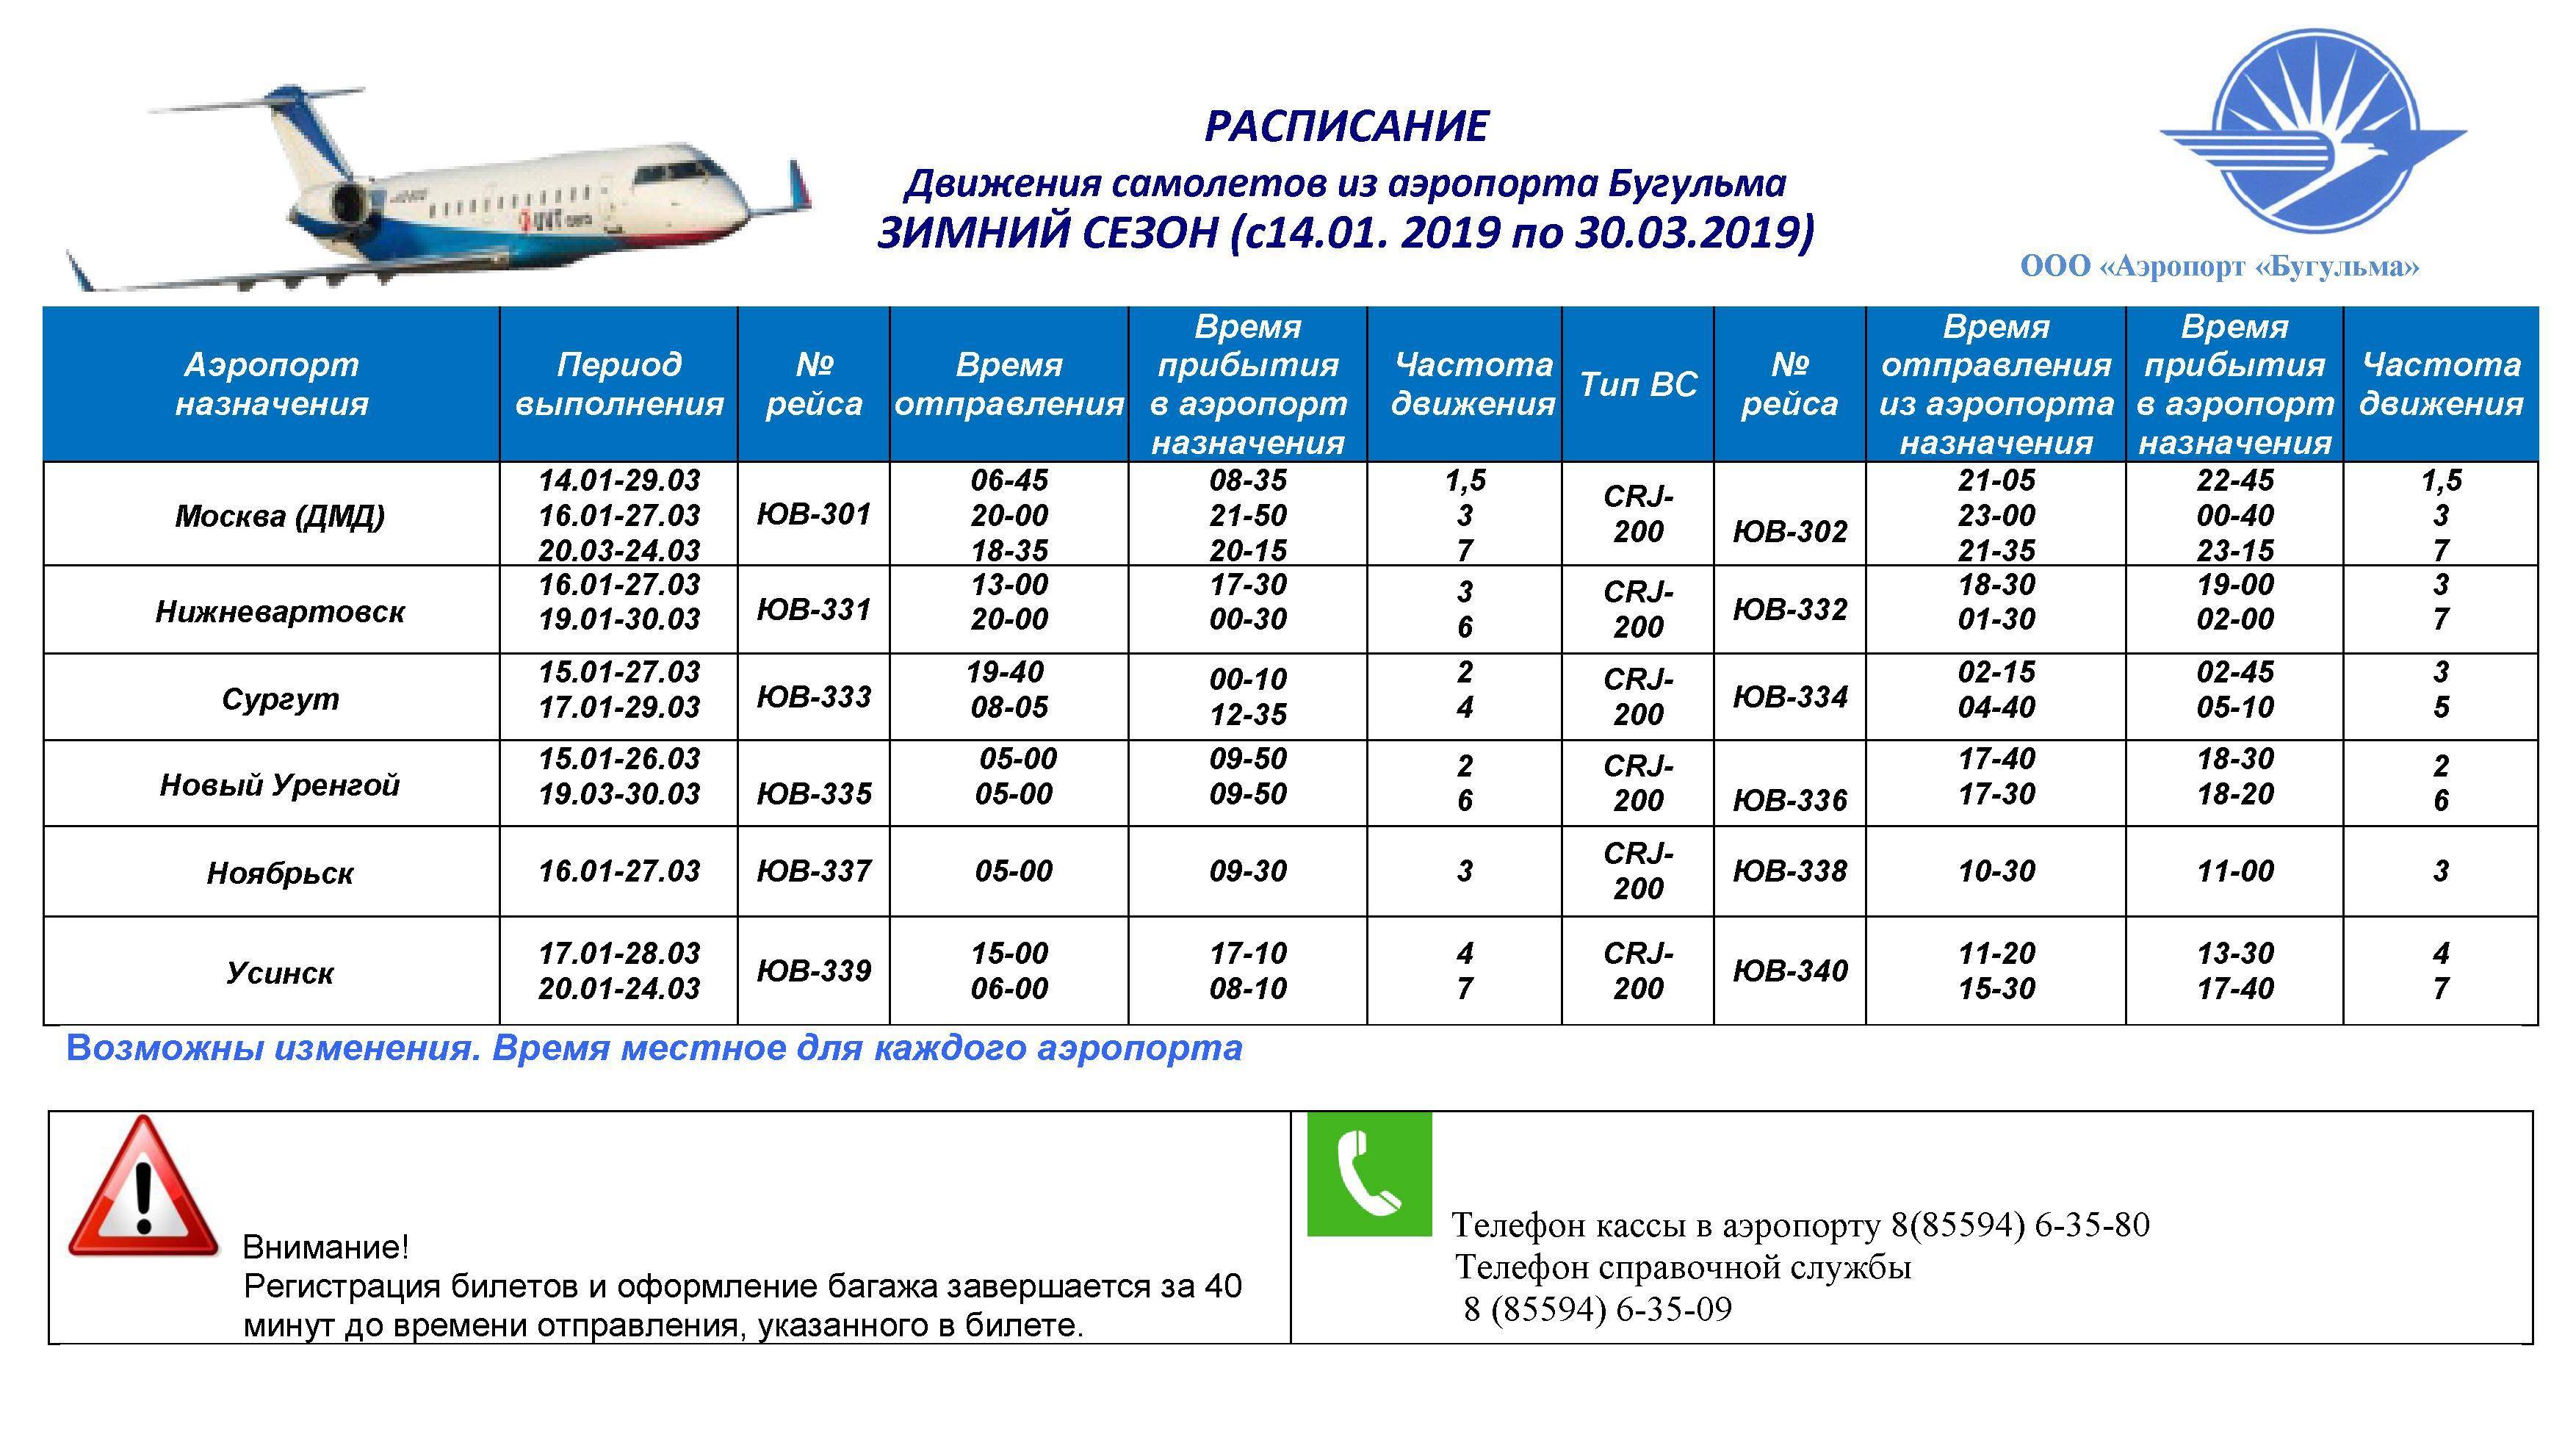 Кассы авиабилеты расписание билеты на самолет москва купить авиабилеты